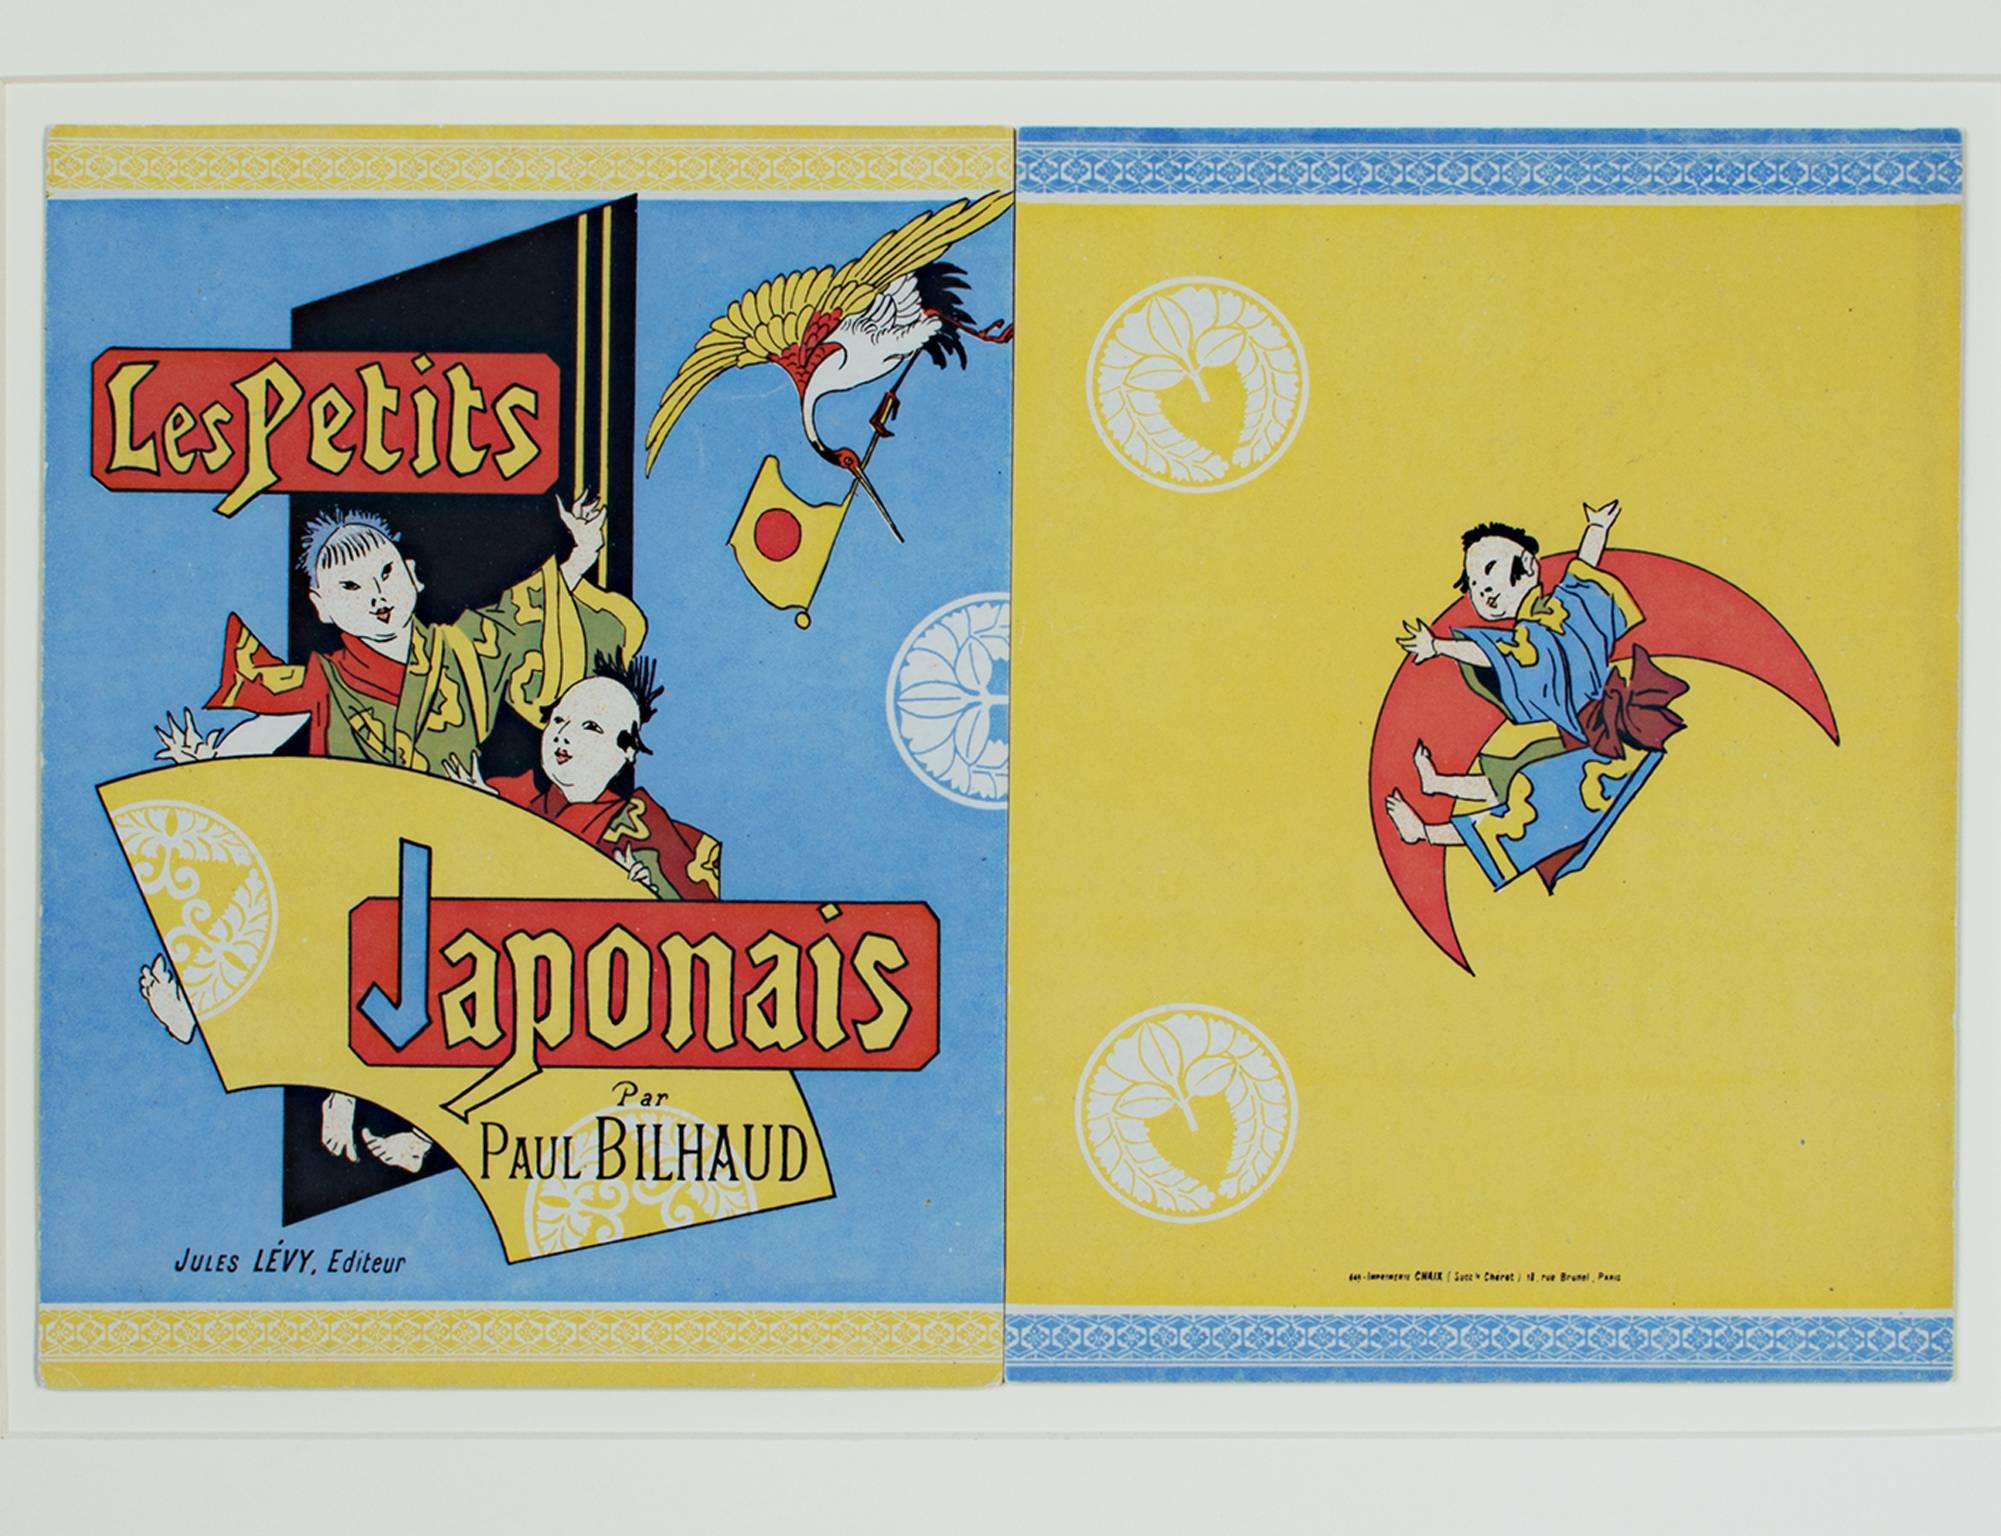 "Les Petits Japonais" ist eine originale Farblithographie von Jules Cheret. Es zeigt drei junge japanische Kinder in den Farben Rot, Gelb und Blau. Dieses Werk ist ein Entwurf für den Umschlag des Buches "Les Petits Japonais" von Paul Bilhaud. 

10"